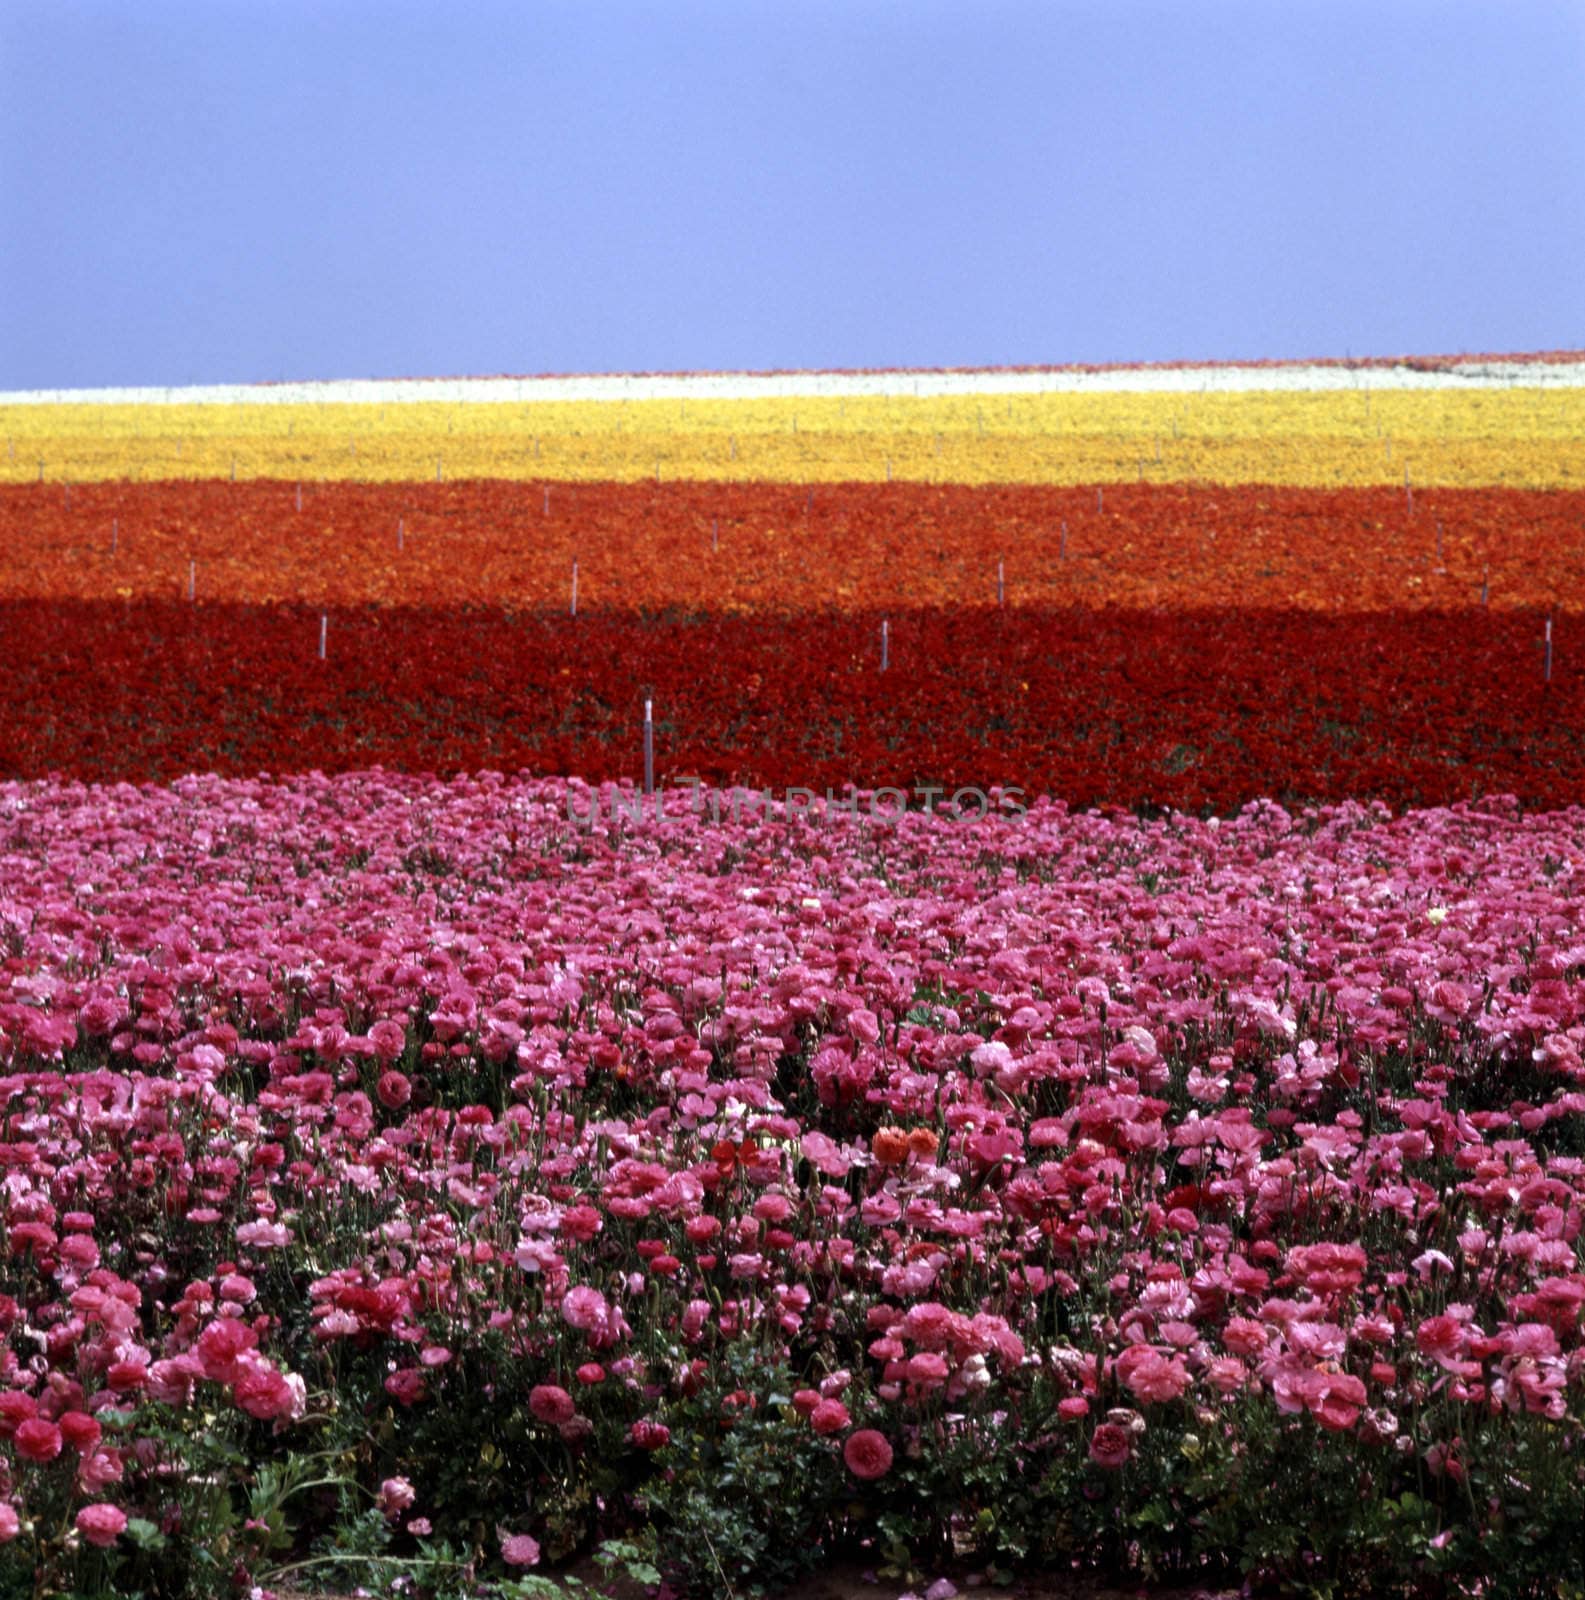 Field of flowers by jol66